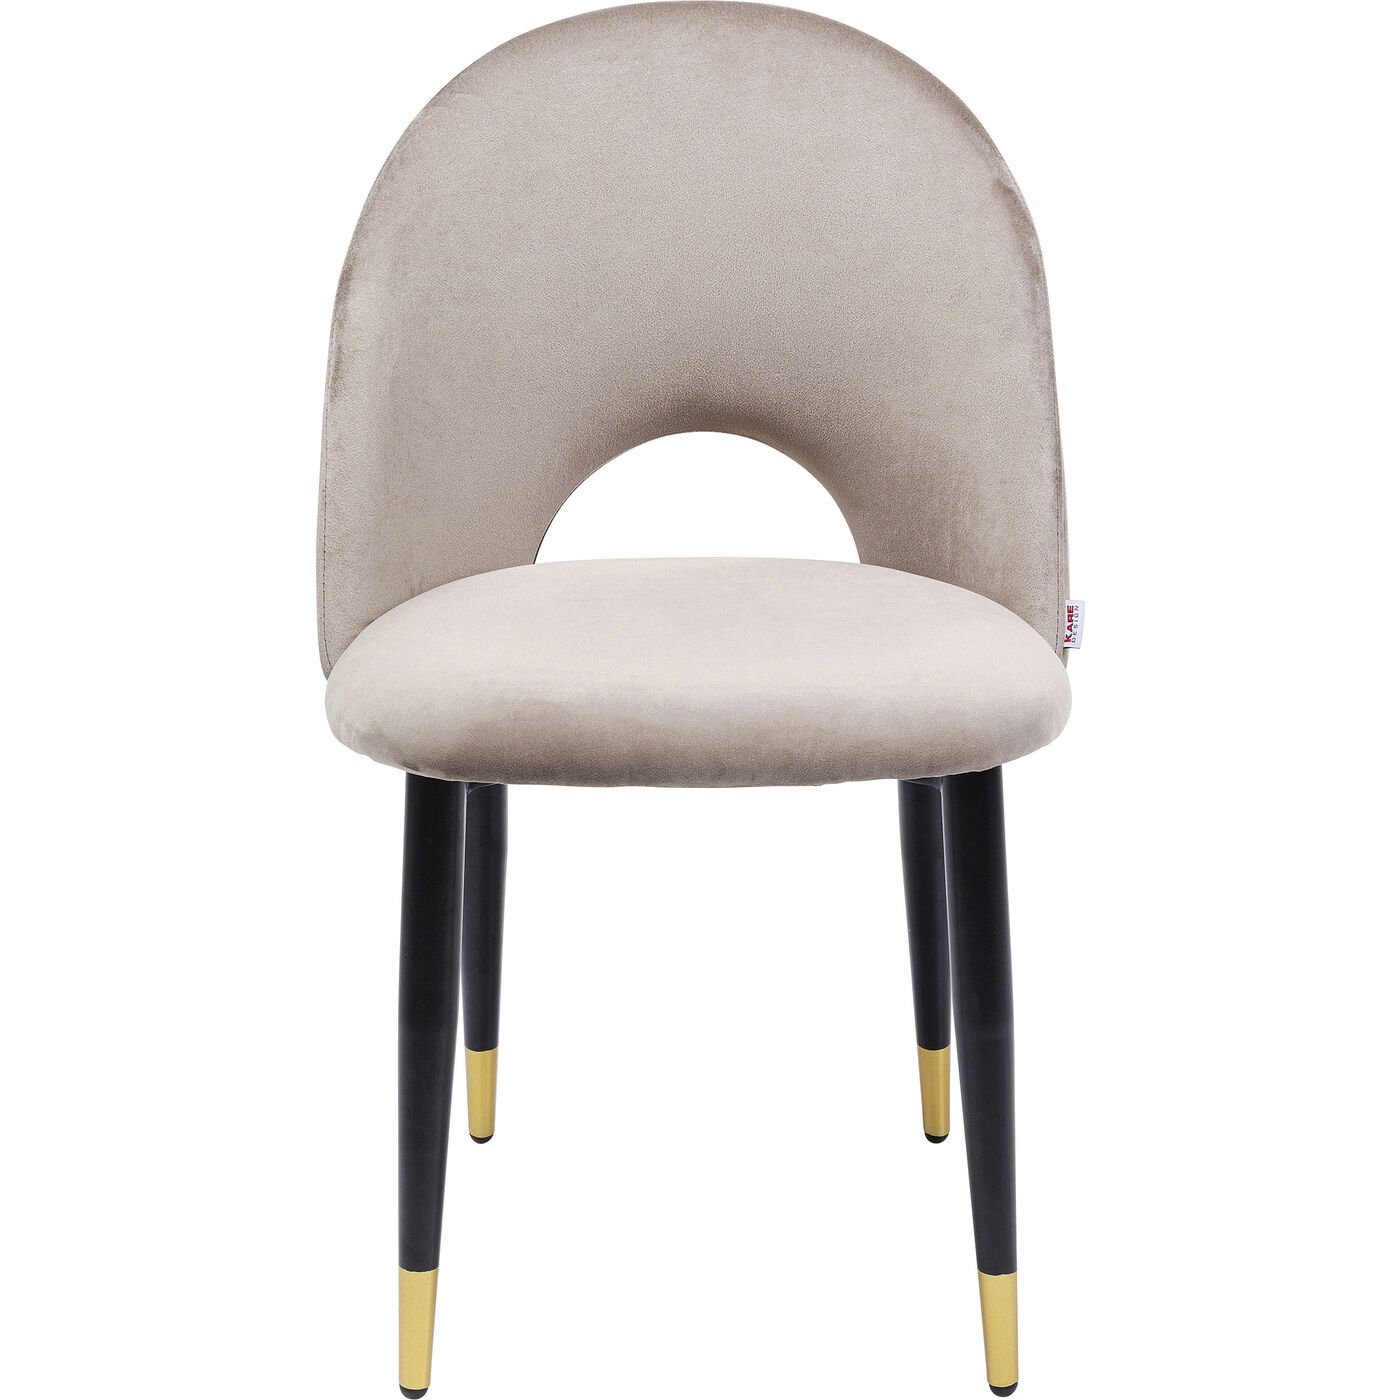 KARE Stuhl »Stuhl Iris Velvet Beige«, Blickfänger mit Grandezza:  Polsterstuhl mit schwarz lackierten Beinen und einem samtigen Bezug in der  klassischen Farbe Beige online kaufen | OTTO